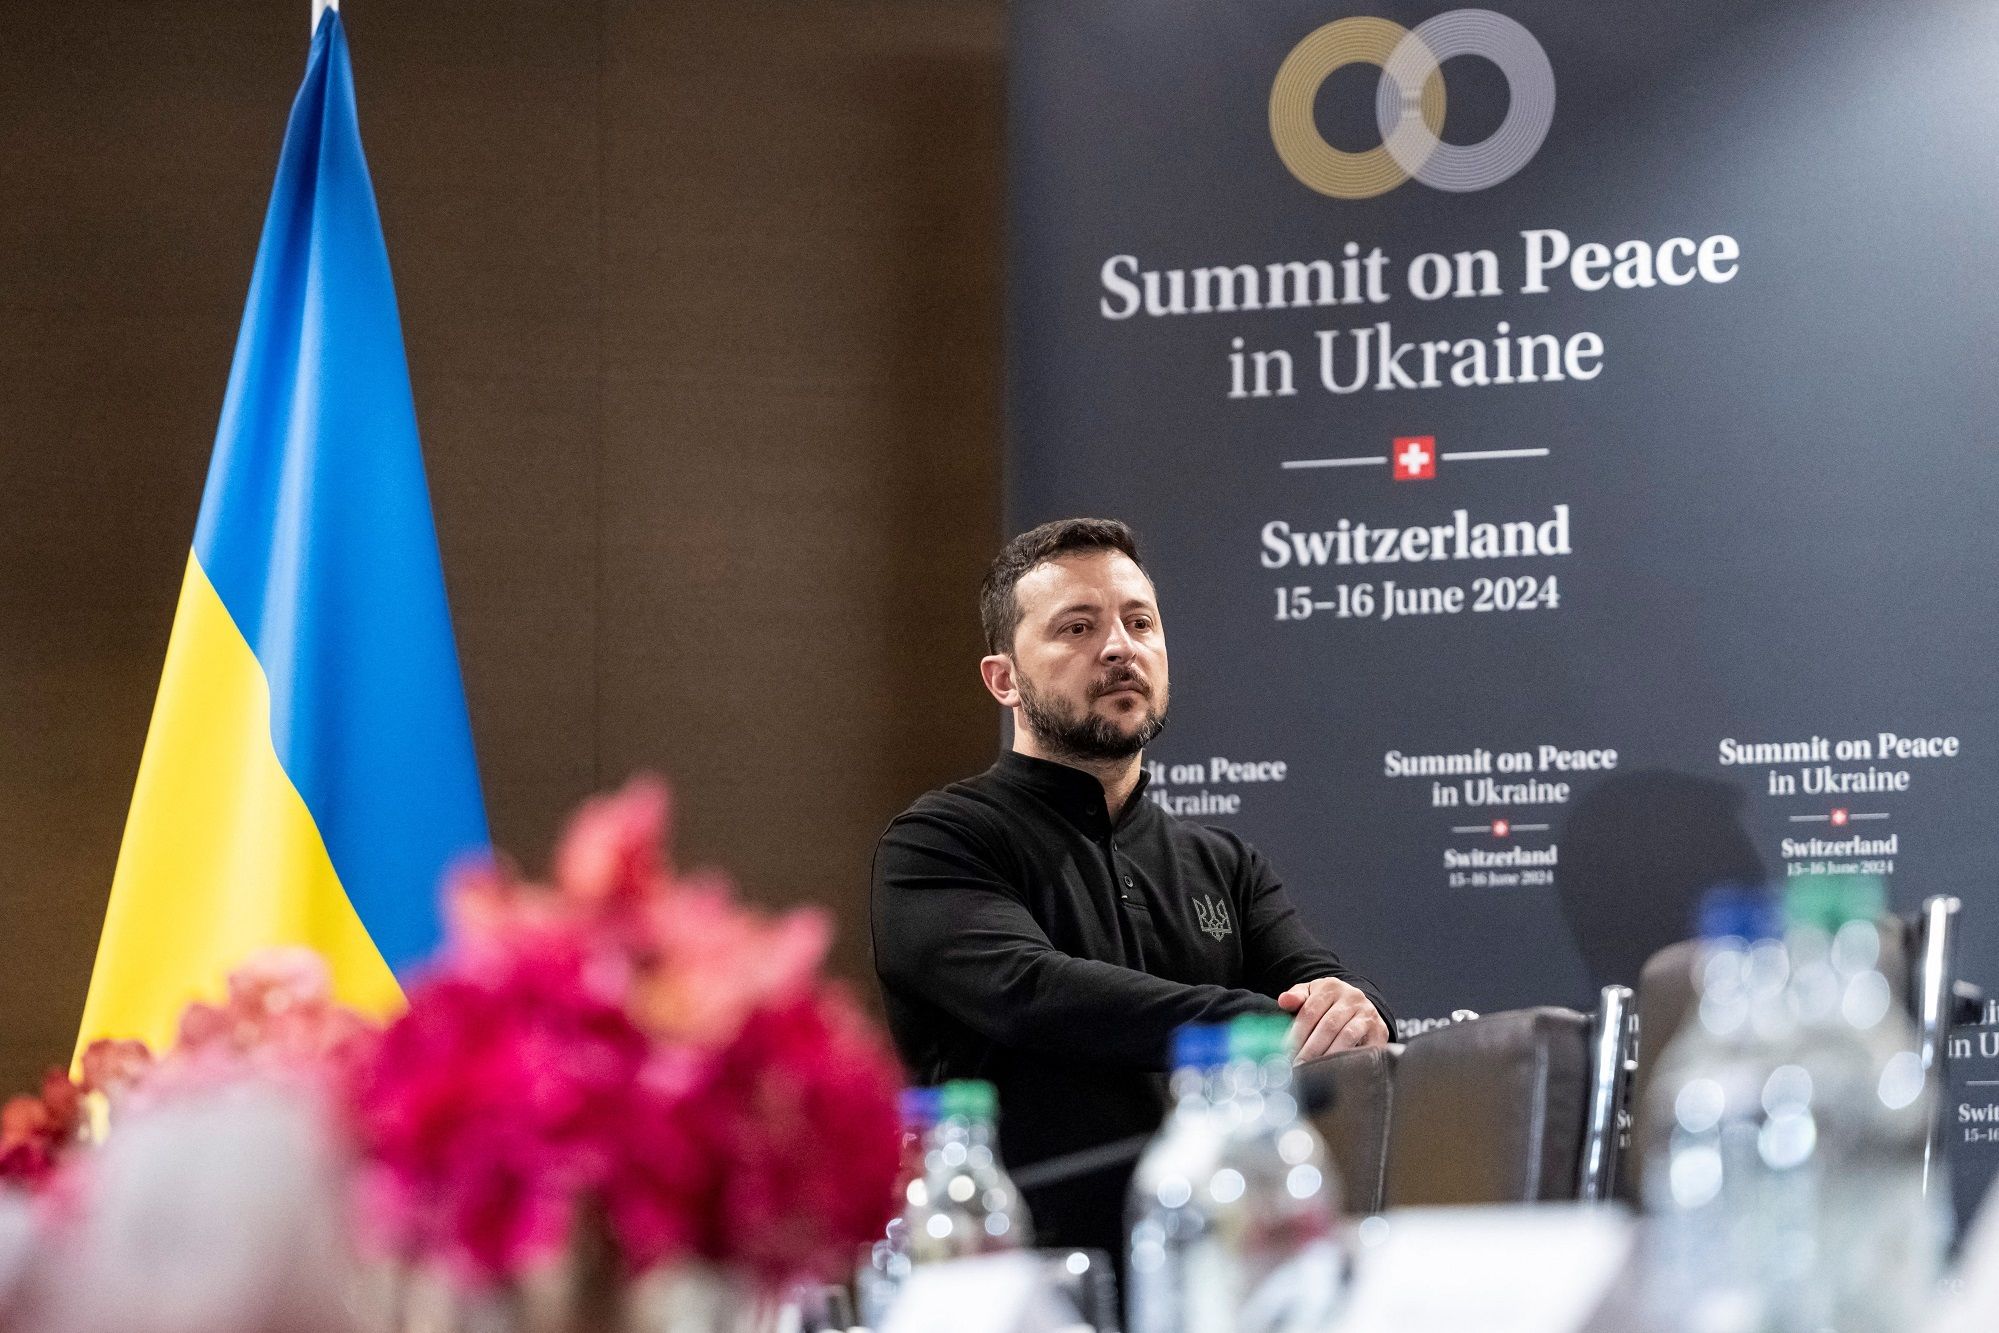 Nuklir dan Keamanan Pangan Jadi Fokus KTT Perdamaian Ukraina di Swiss